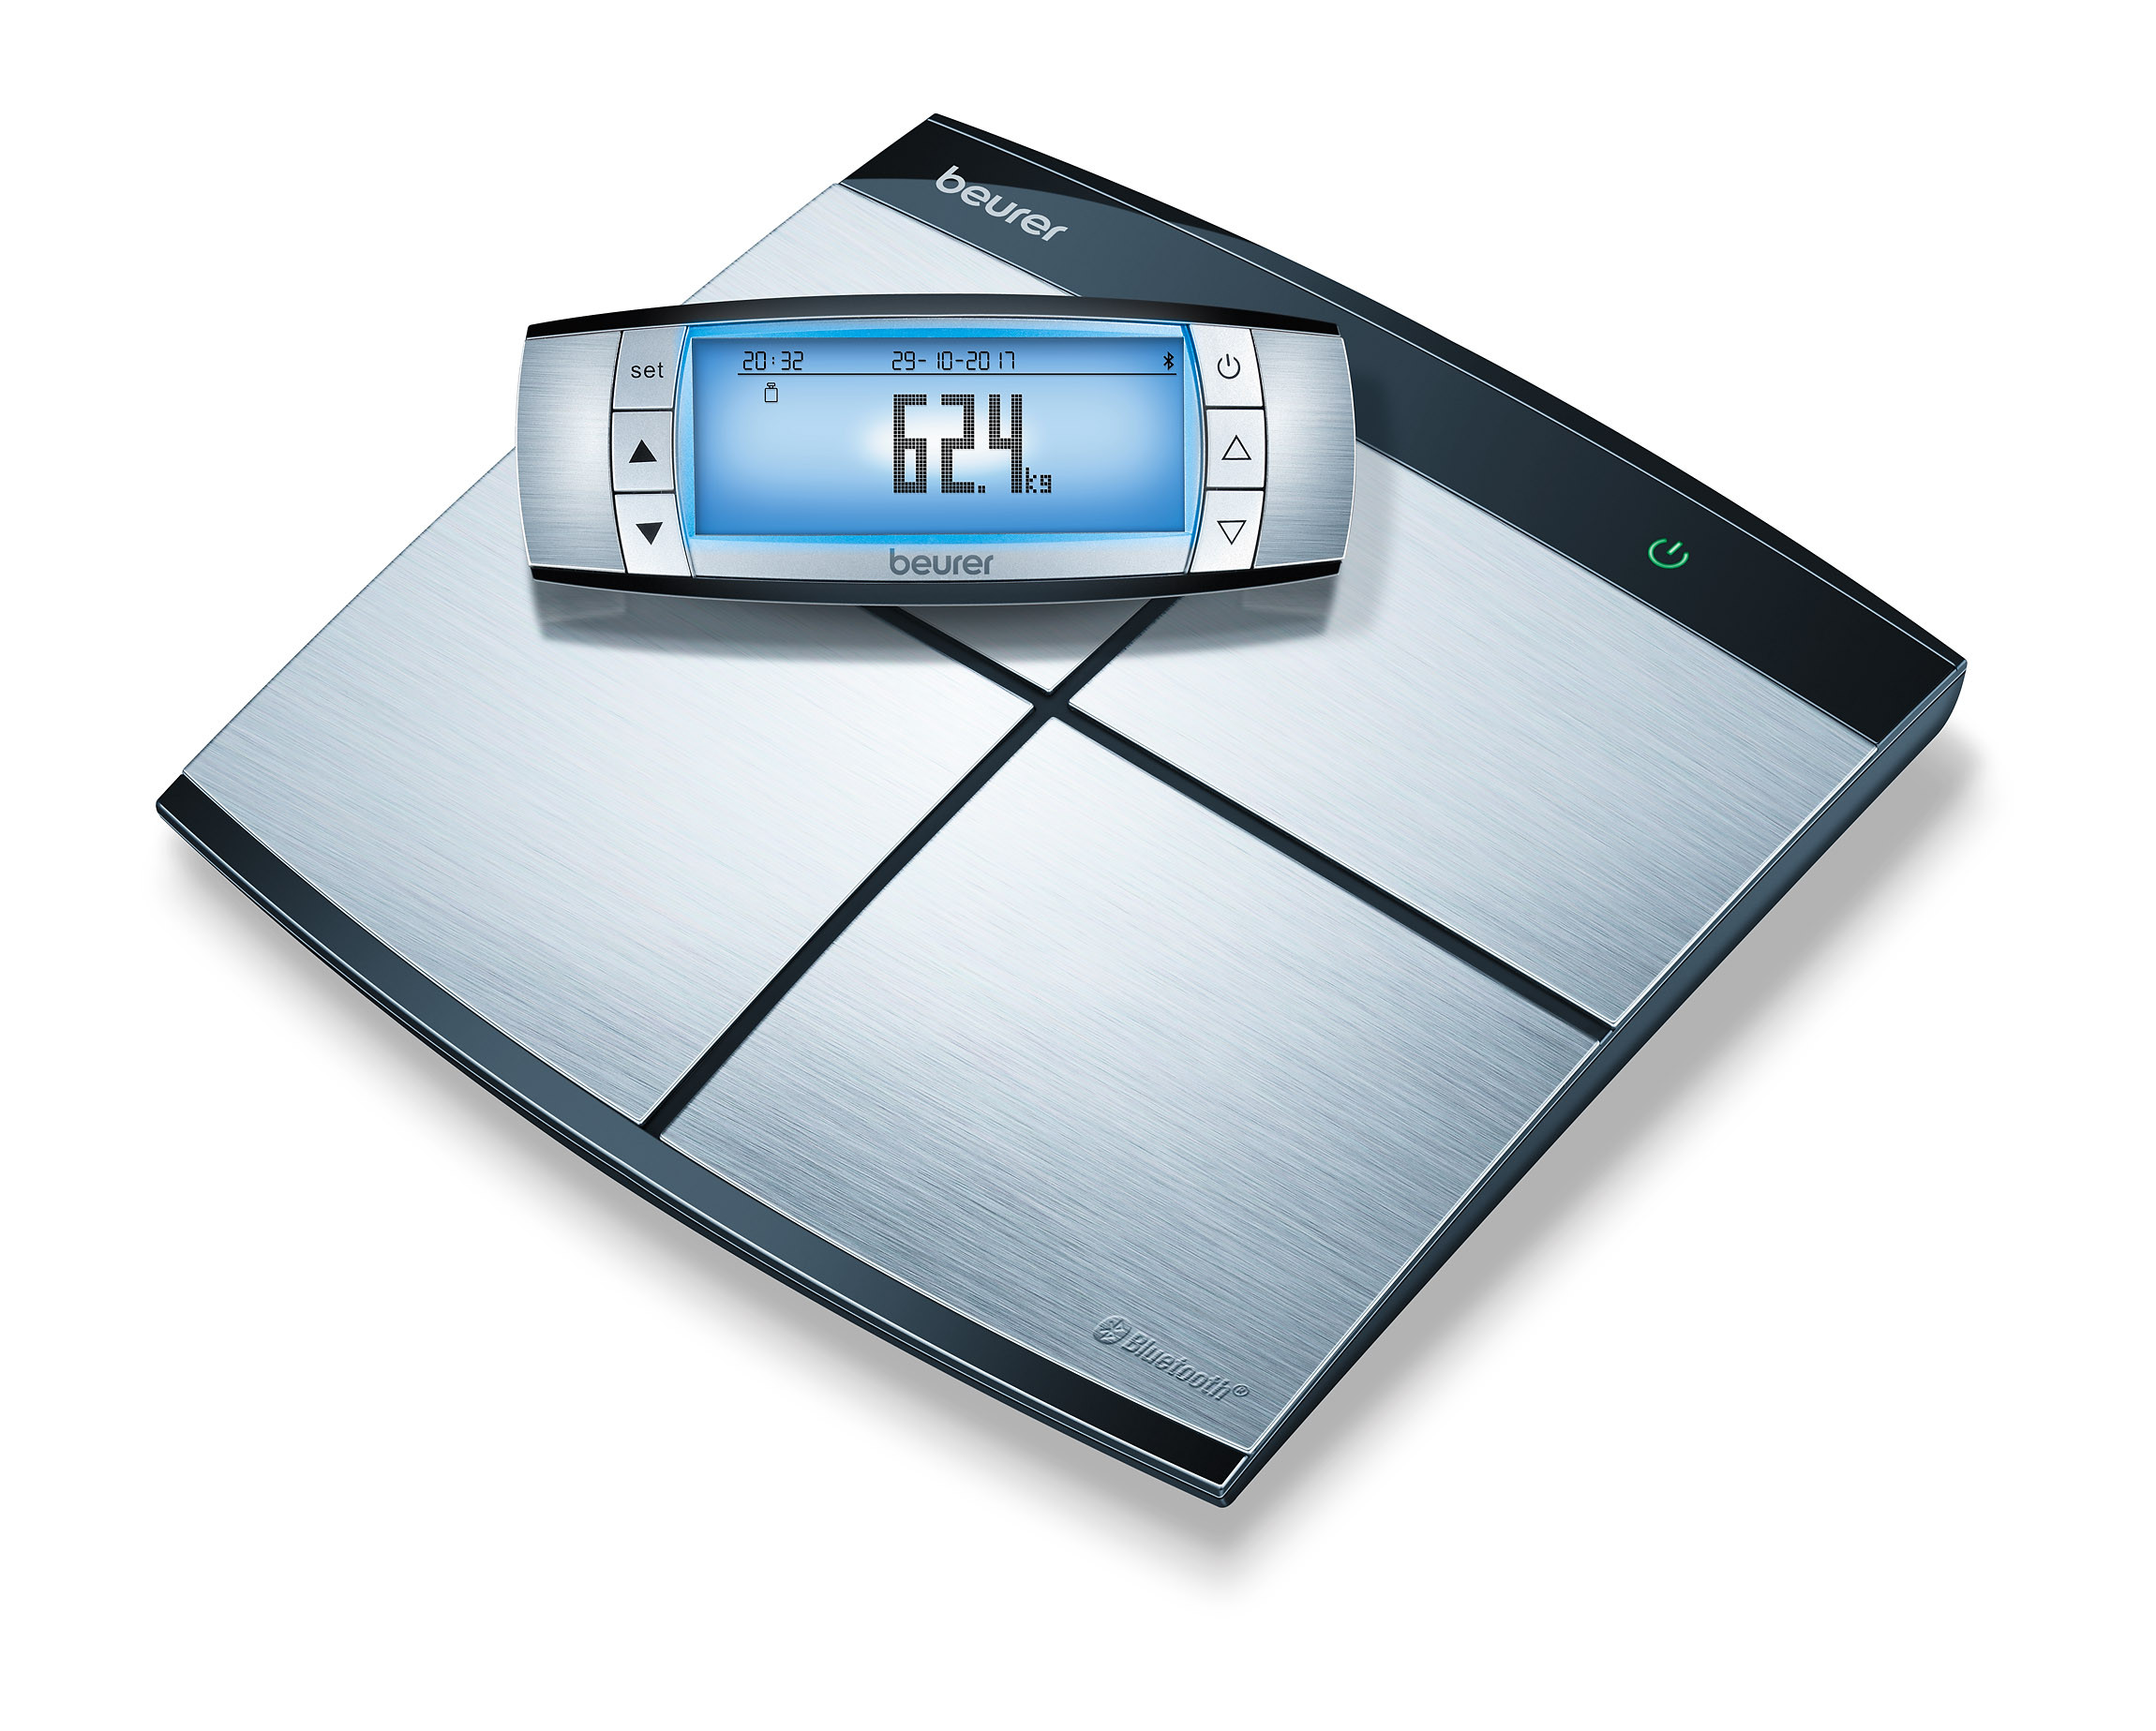 Pèse-personne digital avec analyse de la graisse corporelle avec bluetooth BF105 - 180 kg - 1 pc